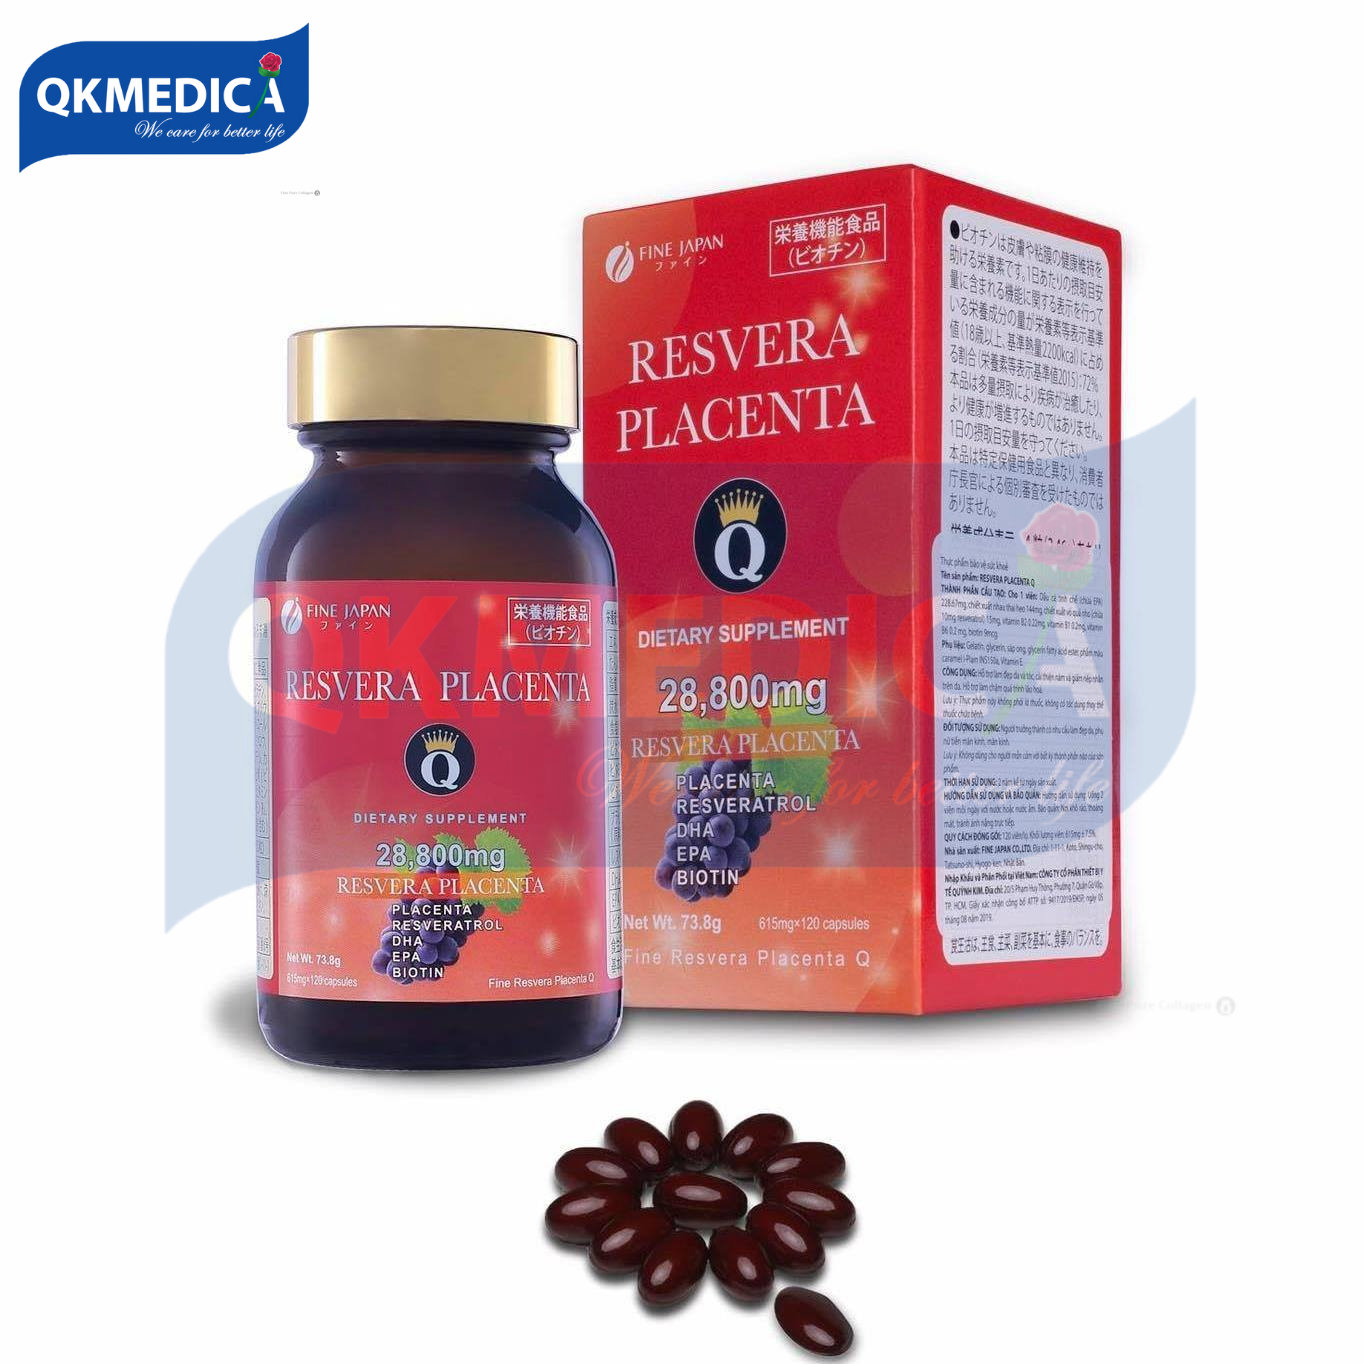 ( MẪU MỚI )Thực phẩm bảo vệ sức khỏe Resvera Placenta Q (Viên uống hỗ trợ làm đẹp da và tóc, cải thiện nám và giảm nếp nhăn trên da; hỗ trợ làm chậm quá trình lão hóa)